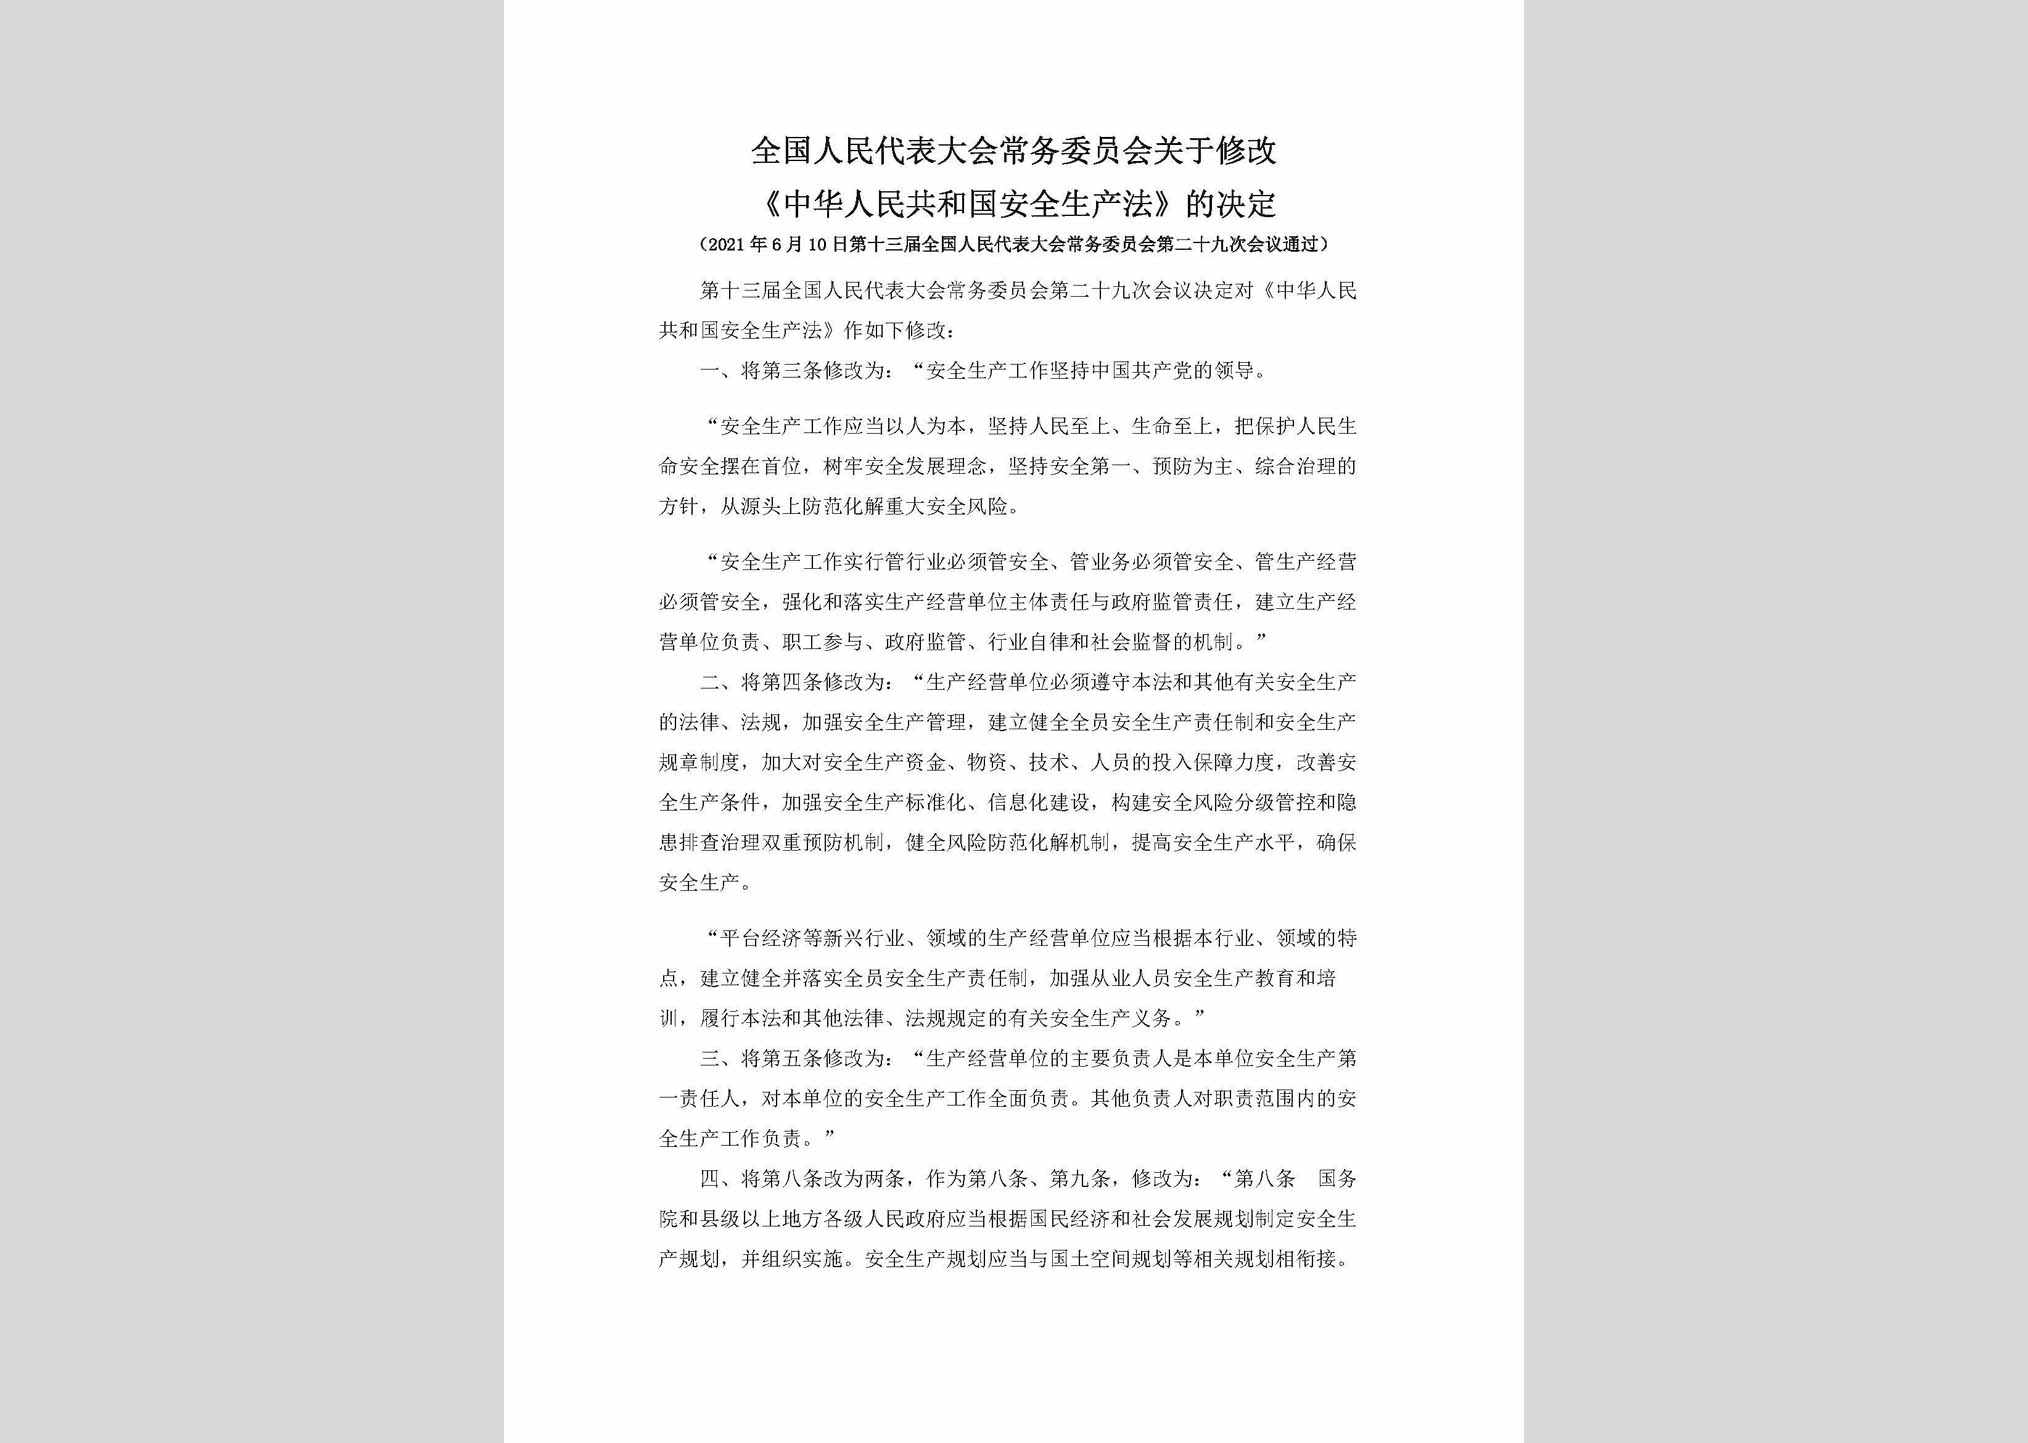 ZGAQSCFX：全国人民代表大会常务委员会关于修改《中华人民共和国安全生产法》的决定